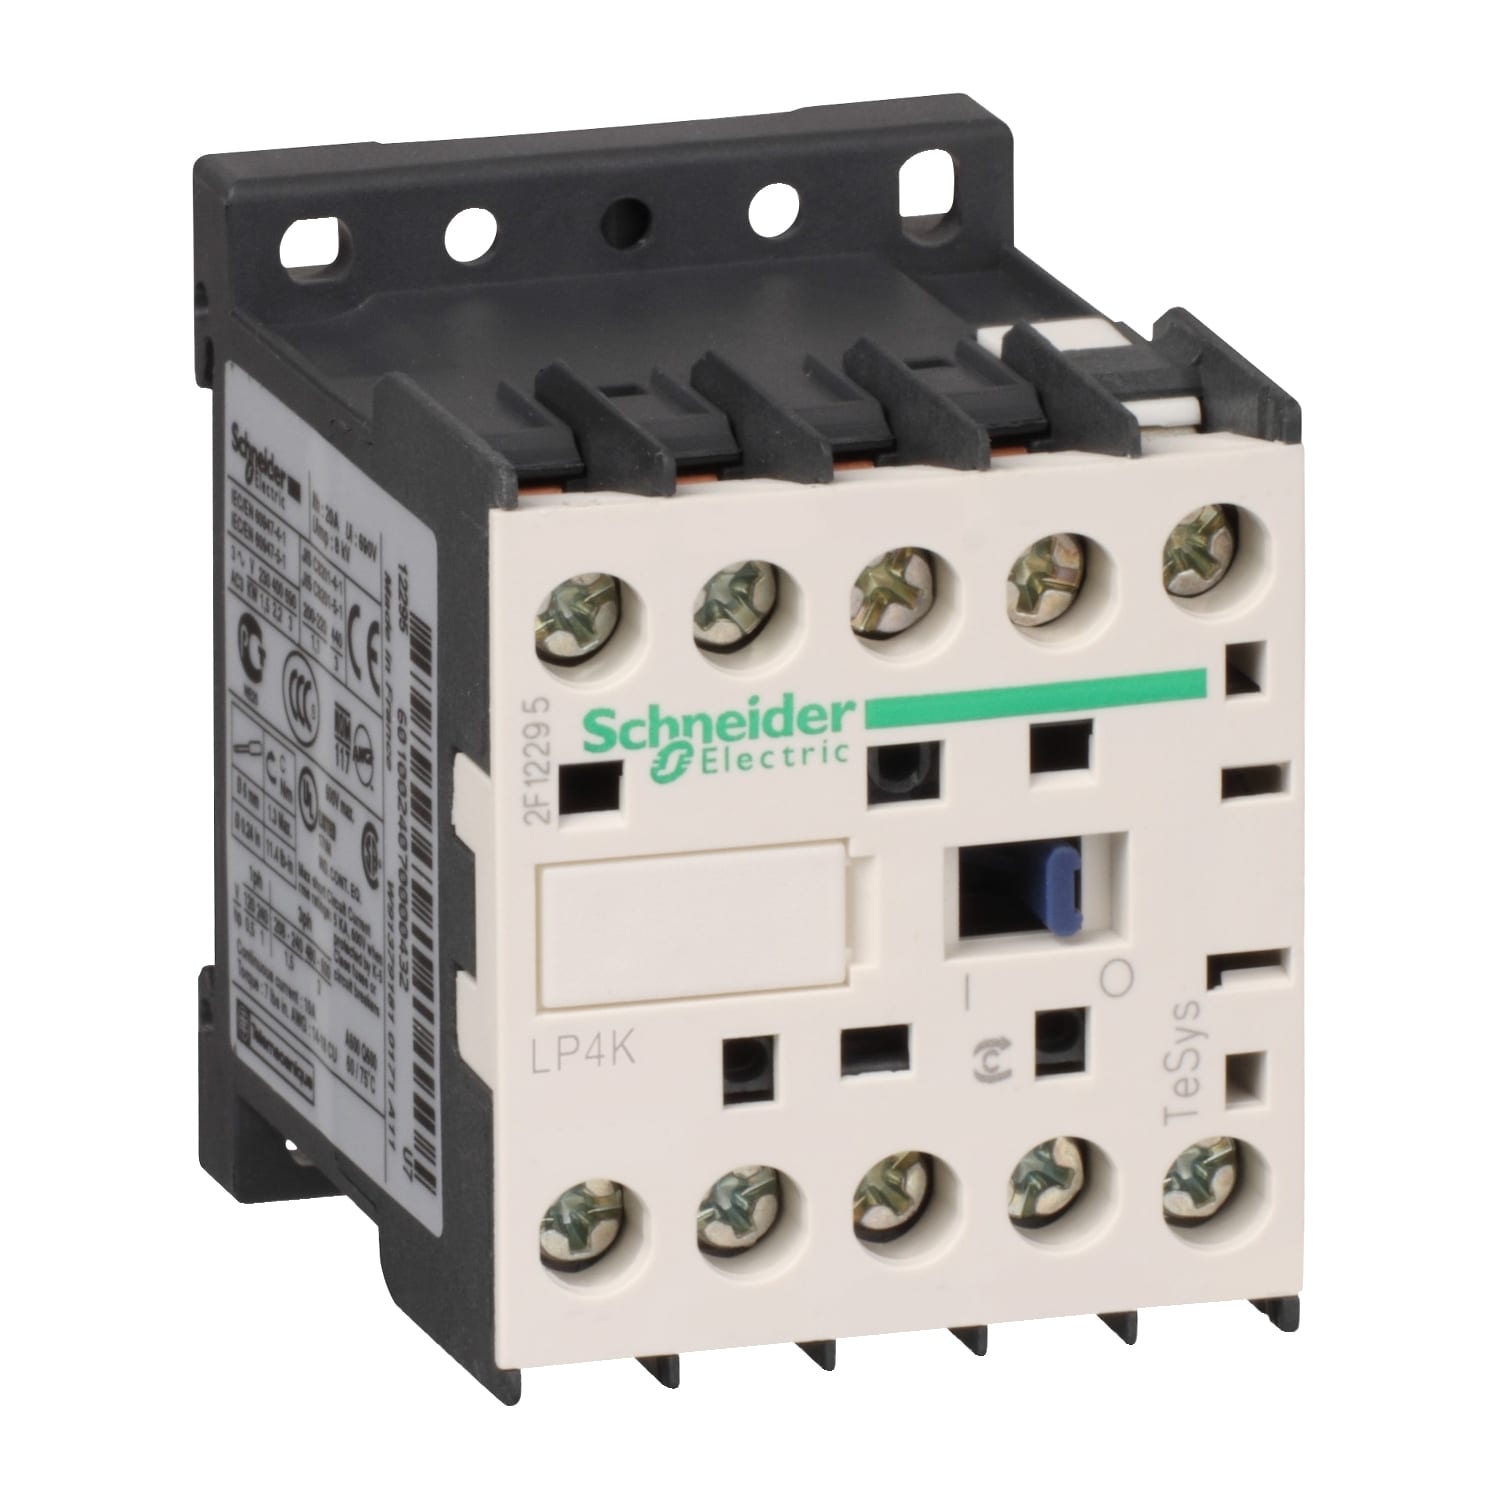 Schneider Electric - TeSys LP4K - contacteur - 3P - AC-3 440V - 12A - bobine 48Vcc